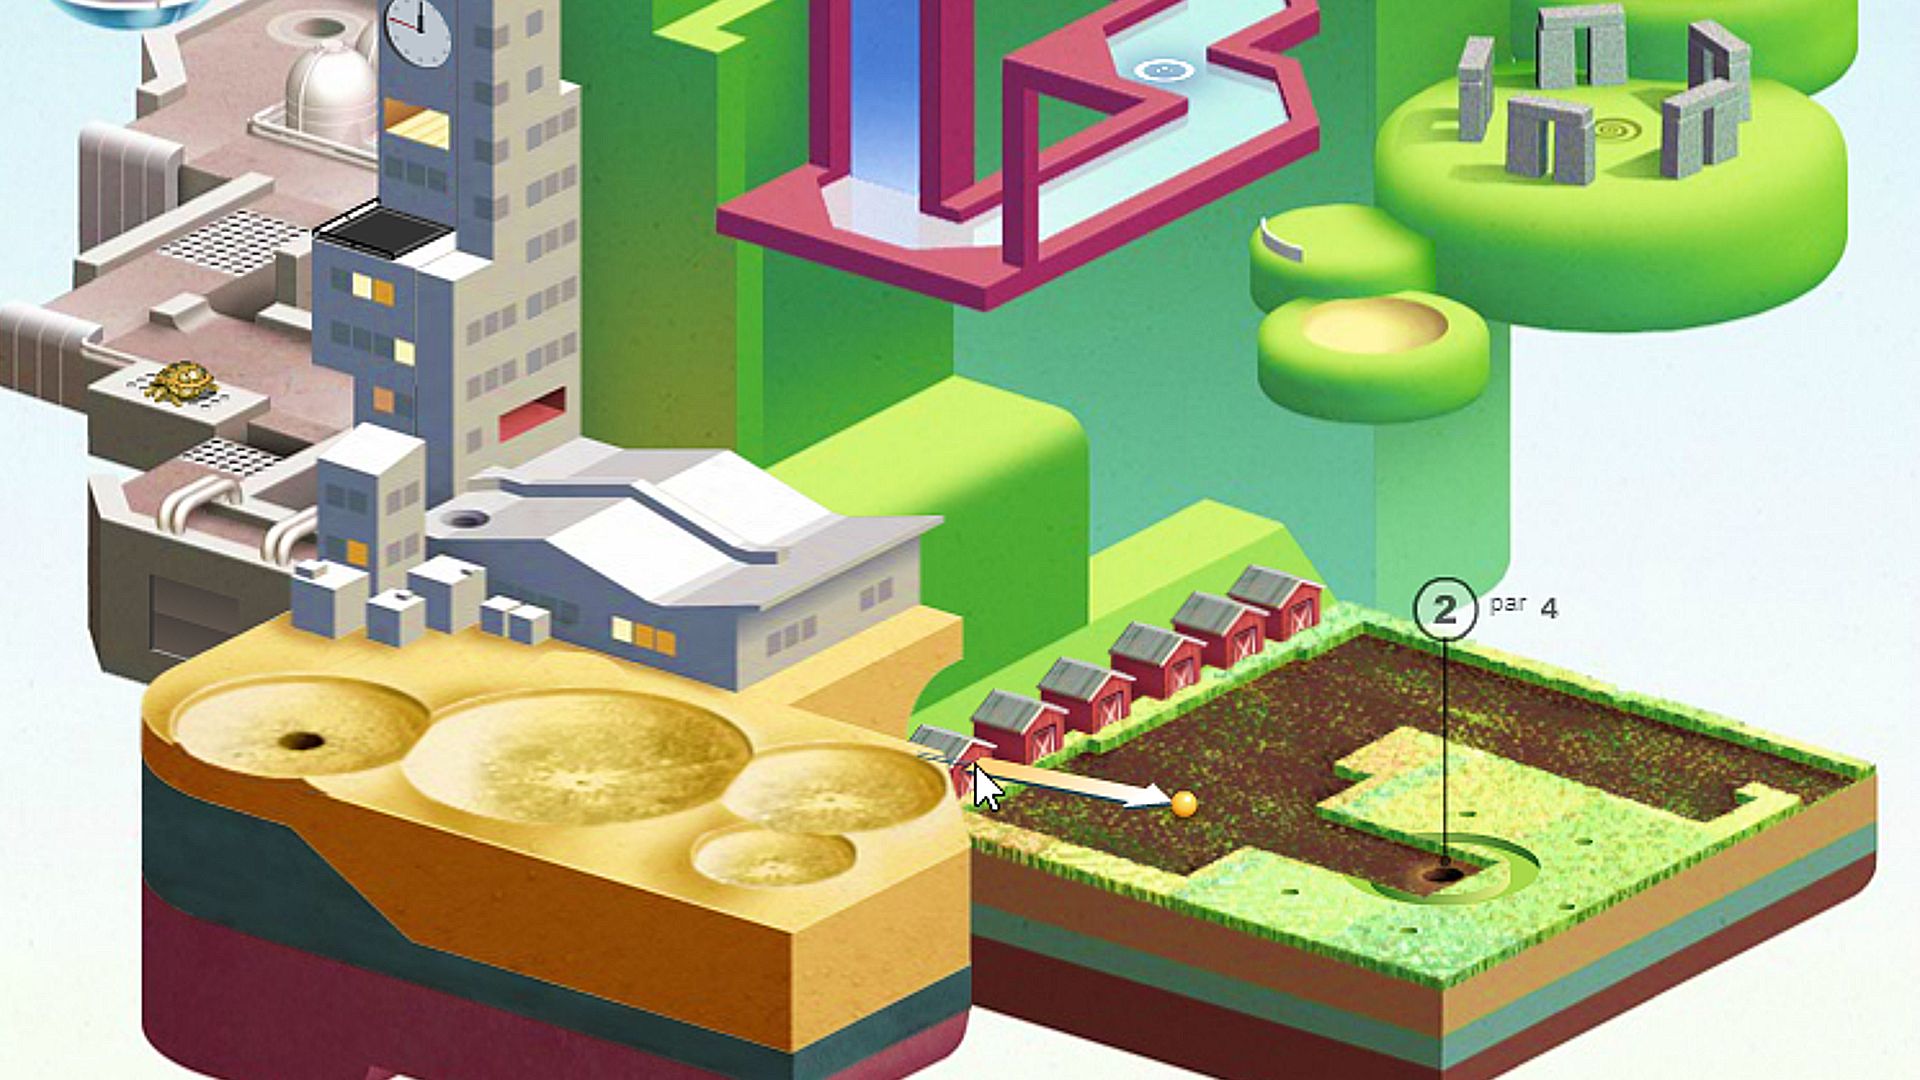 بازی های آنلاین: Wonderputt. تصویر یک زمین گلف شهر را نشان می دهد